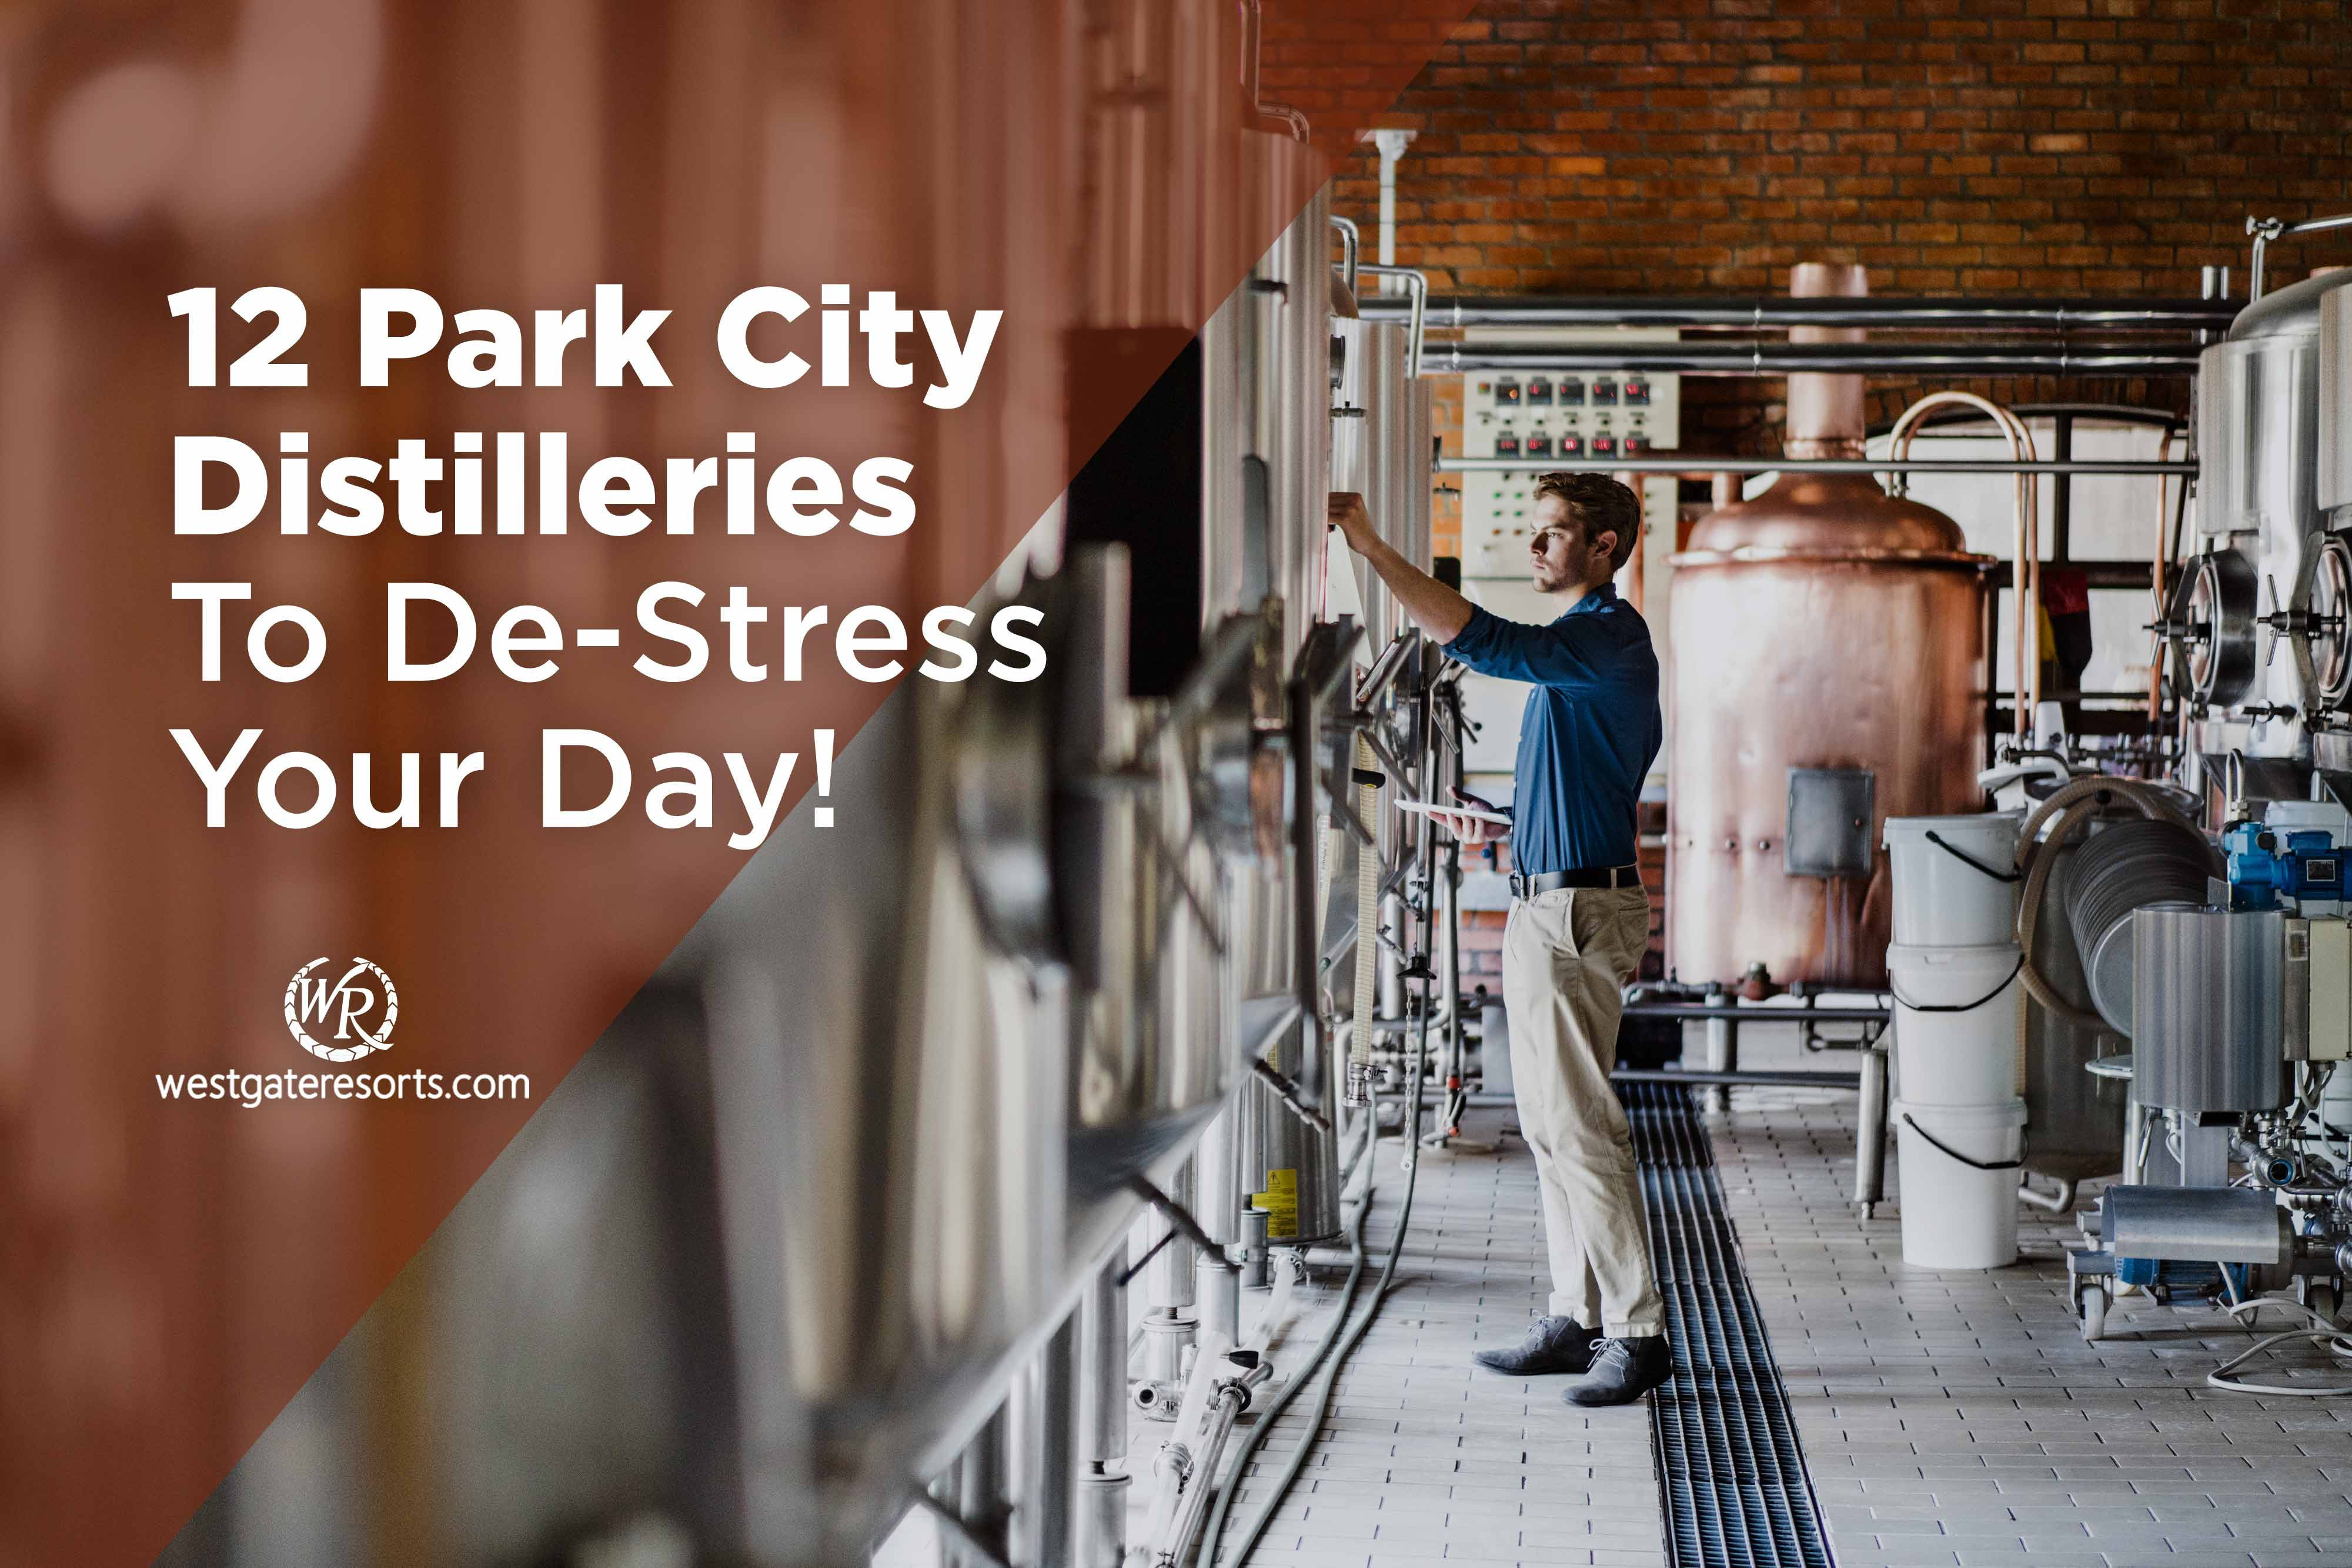 ¡12 destilerías de Park City para desestresarte el día! | Una guía de la destilería de Park City